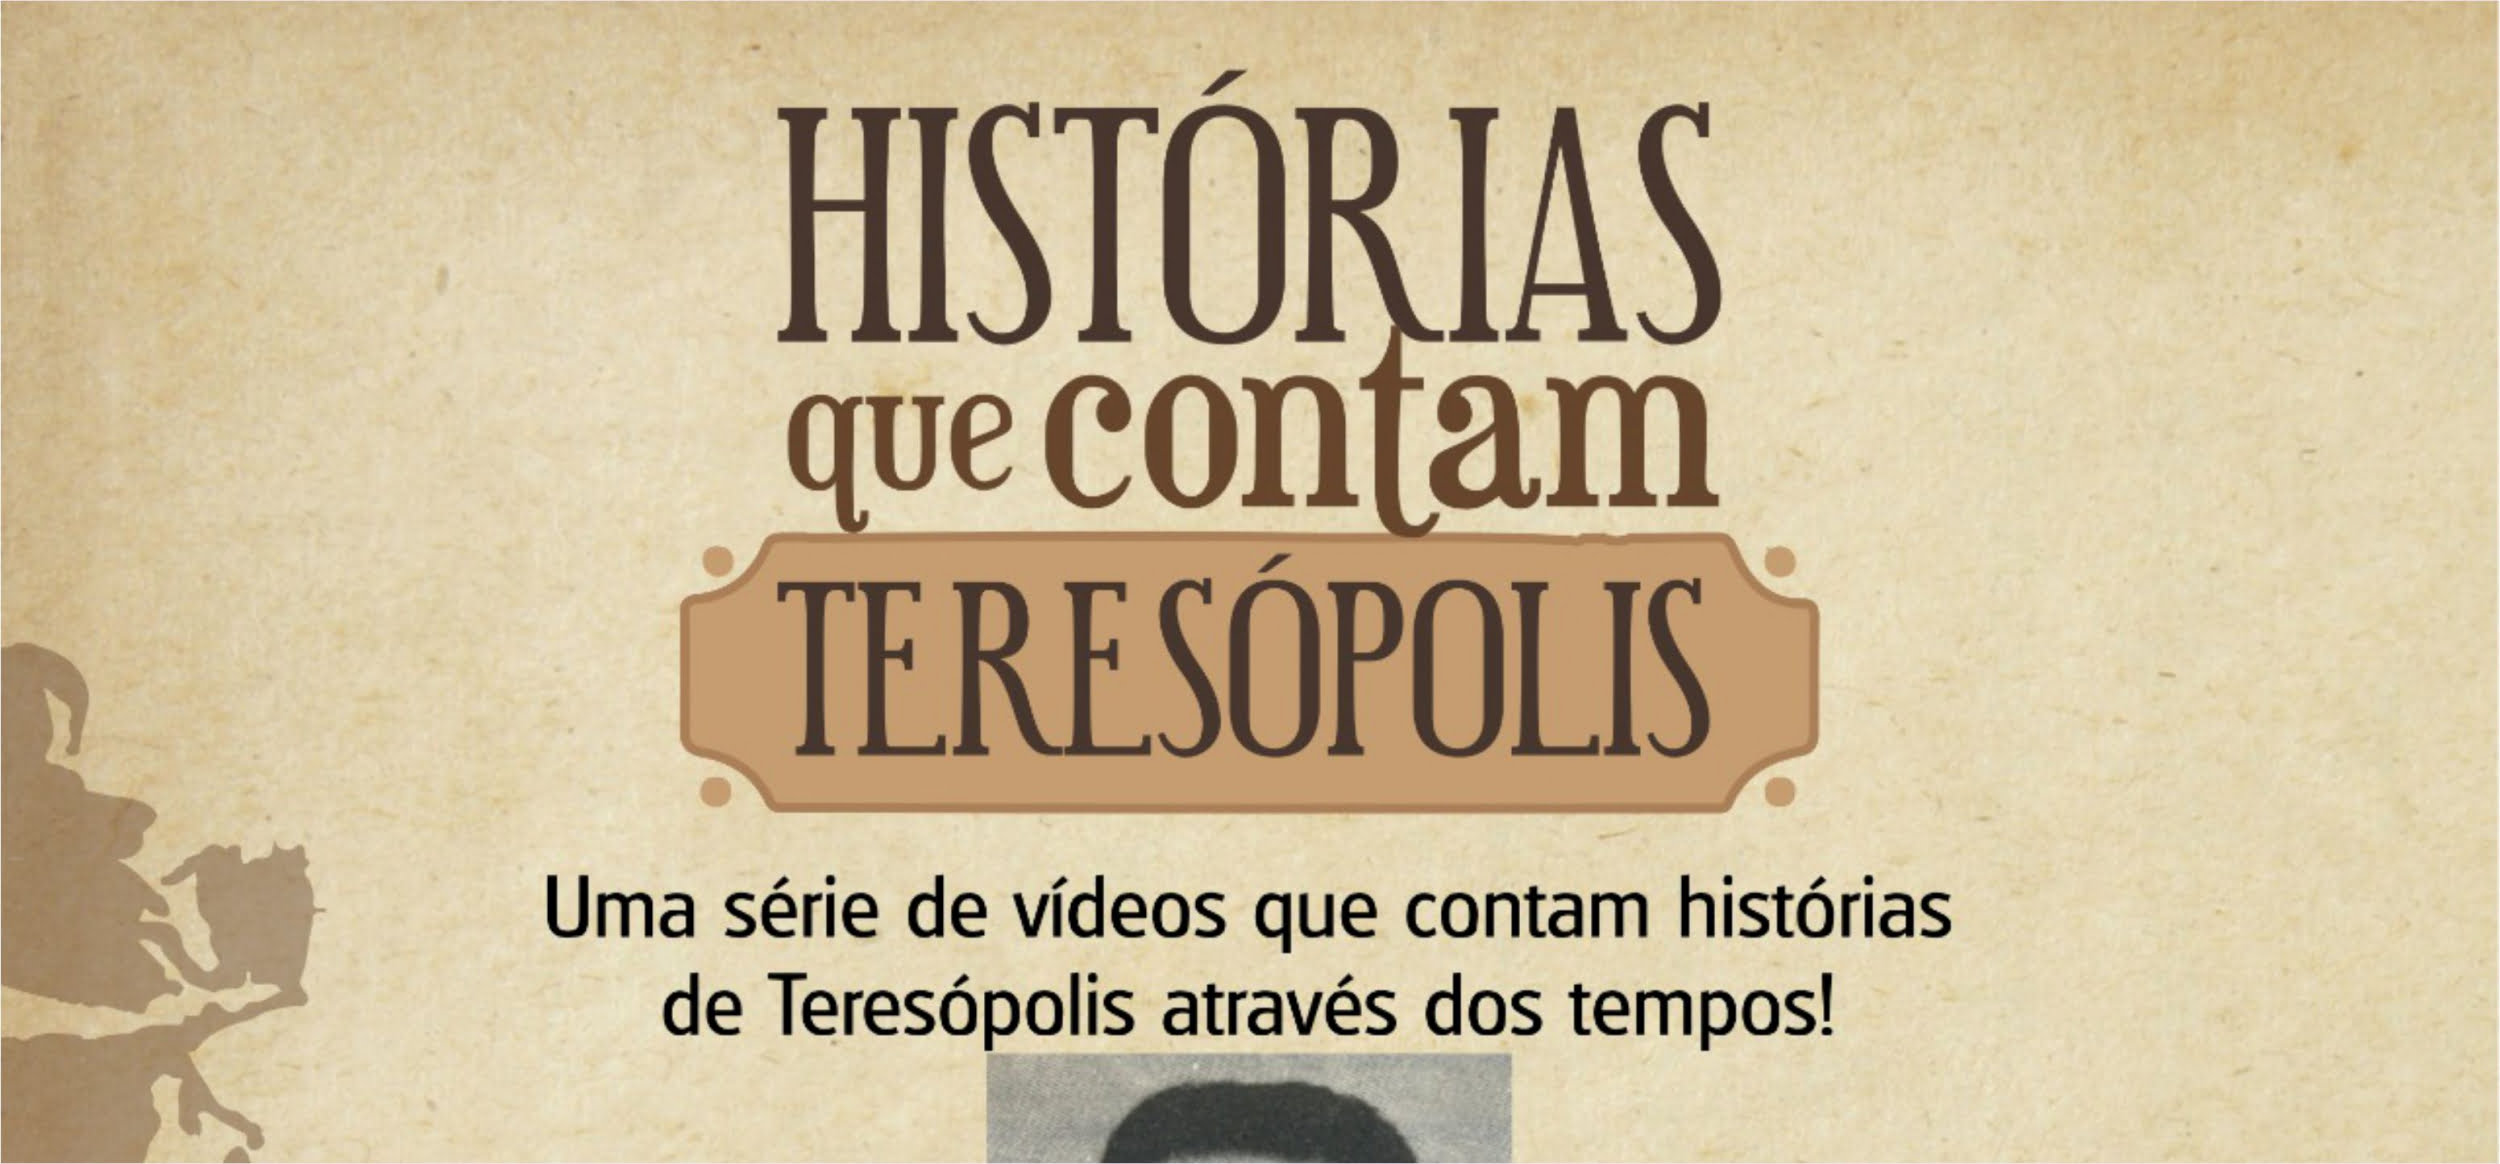 Você está visualizando atualmente “Histórias que contam Teresópolis”